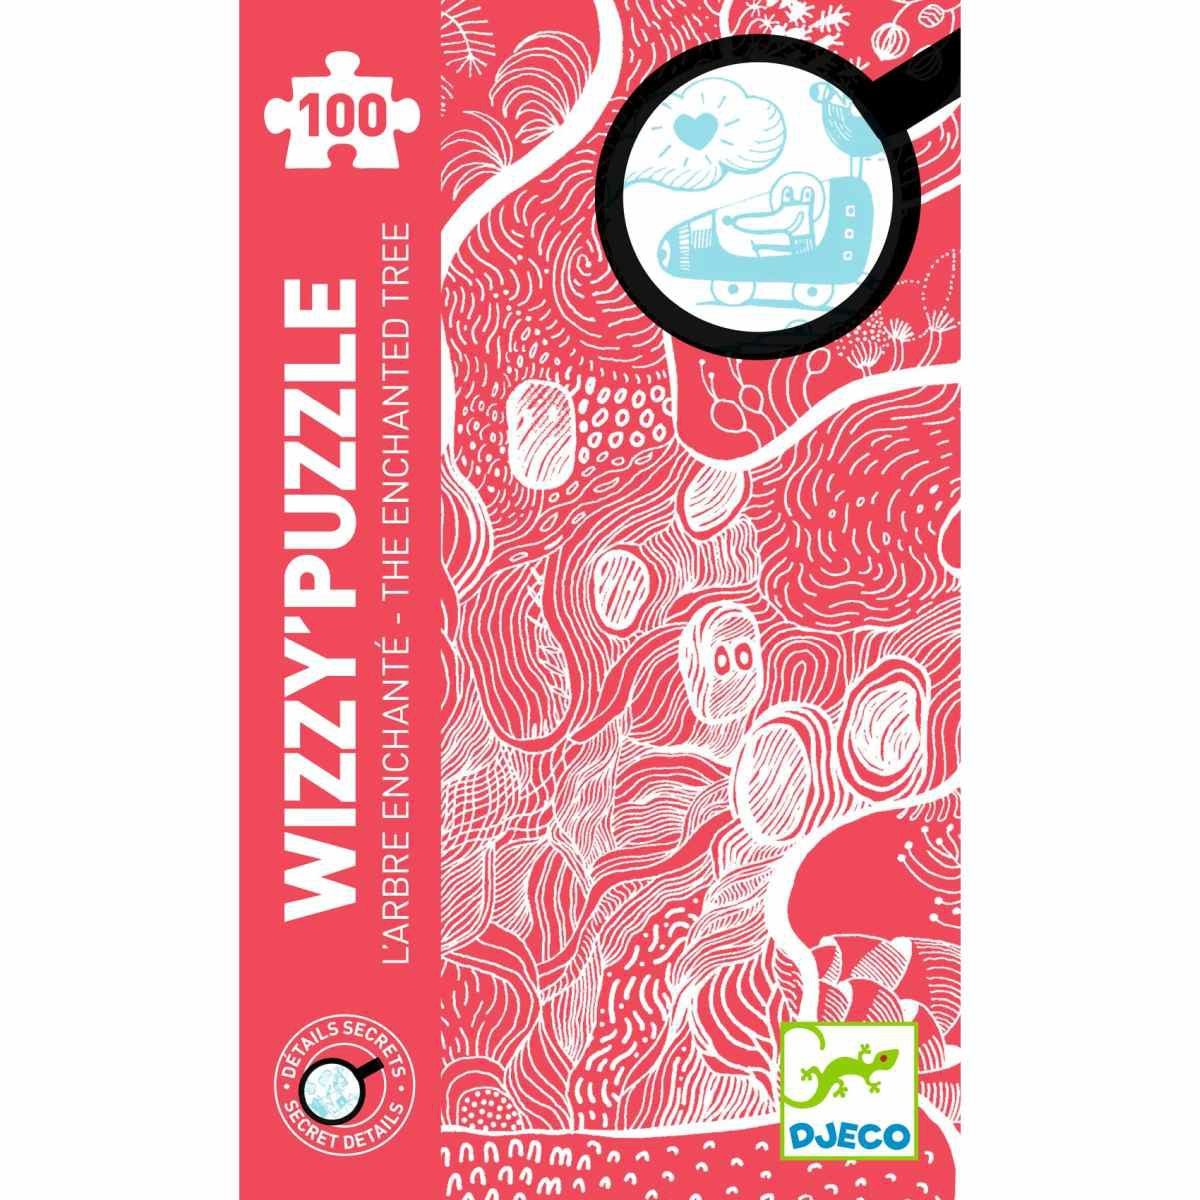 Wizzy’Puzzles: Der verzauberte Baum